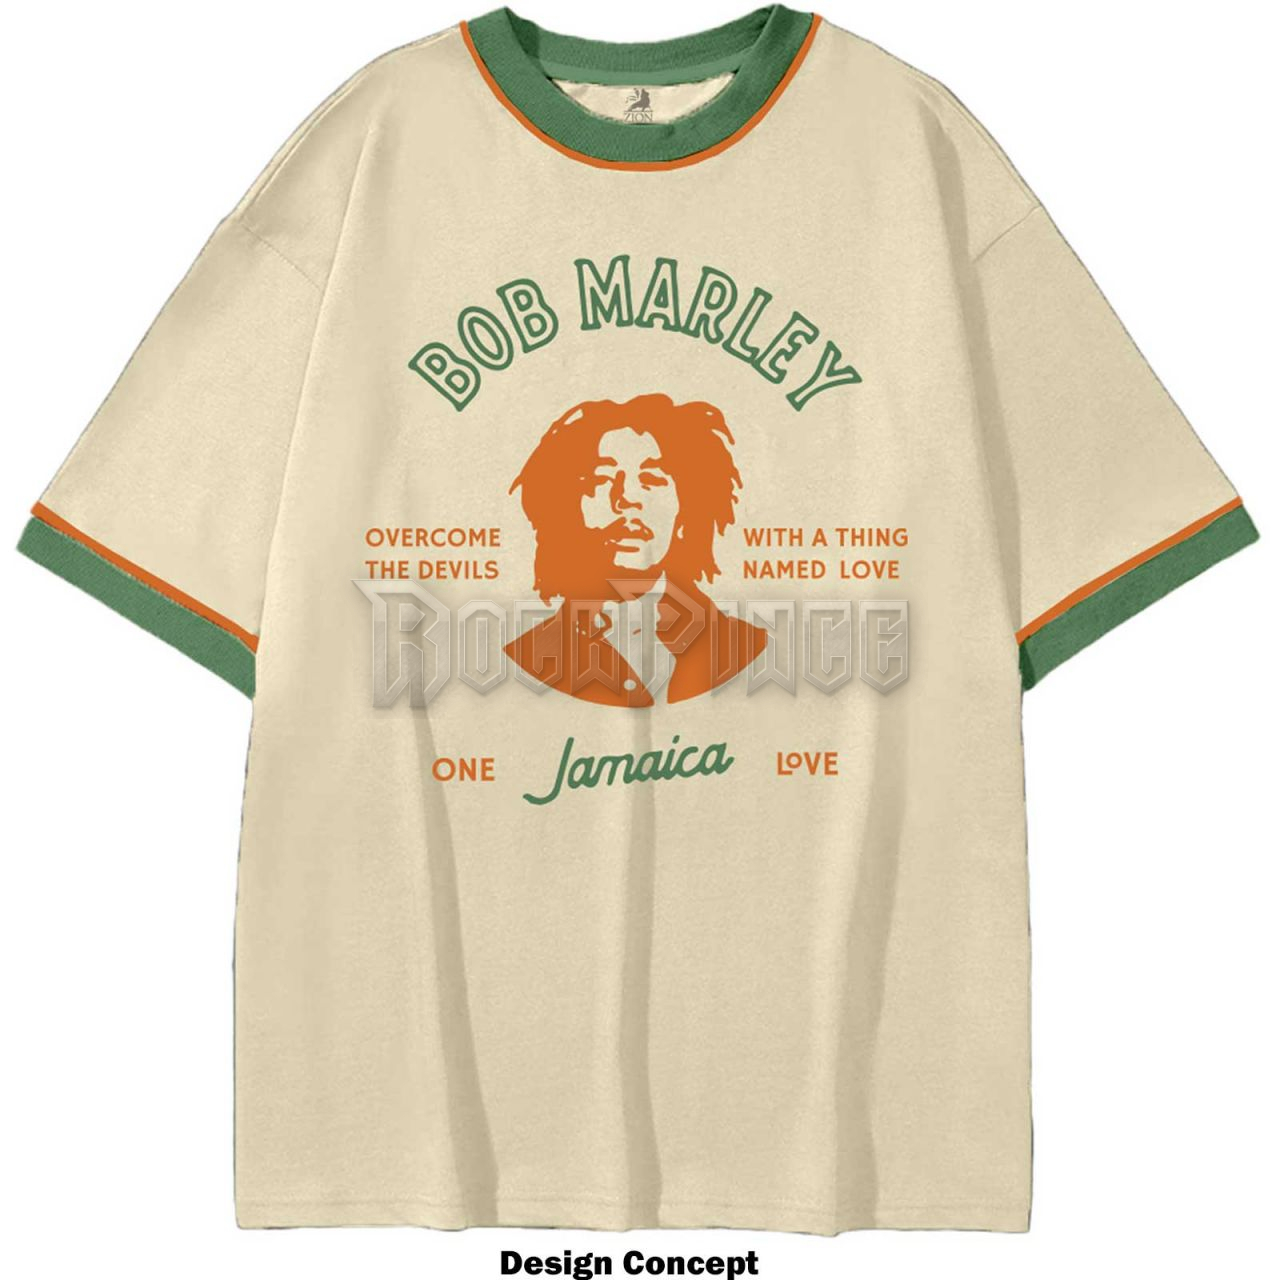 Bob Marley - Thing Called Love - unisex póló - BMATS55MS